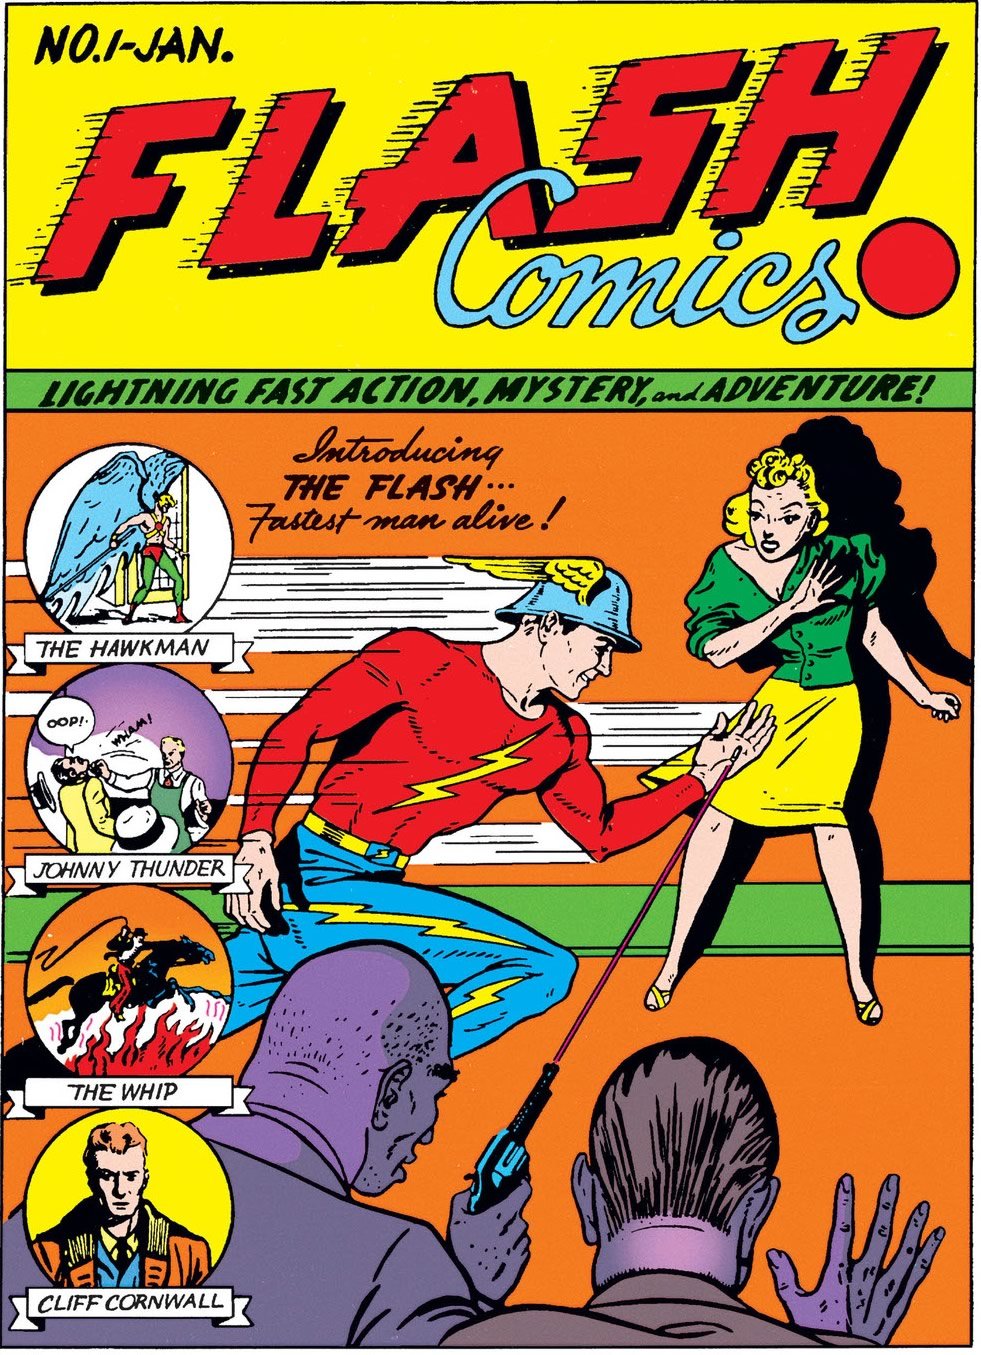 Flash original, Jay Garrick, fez sua primeira aparição em "Flash Comics" # 1 em 1940